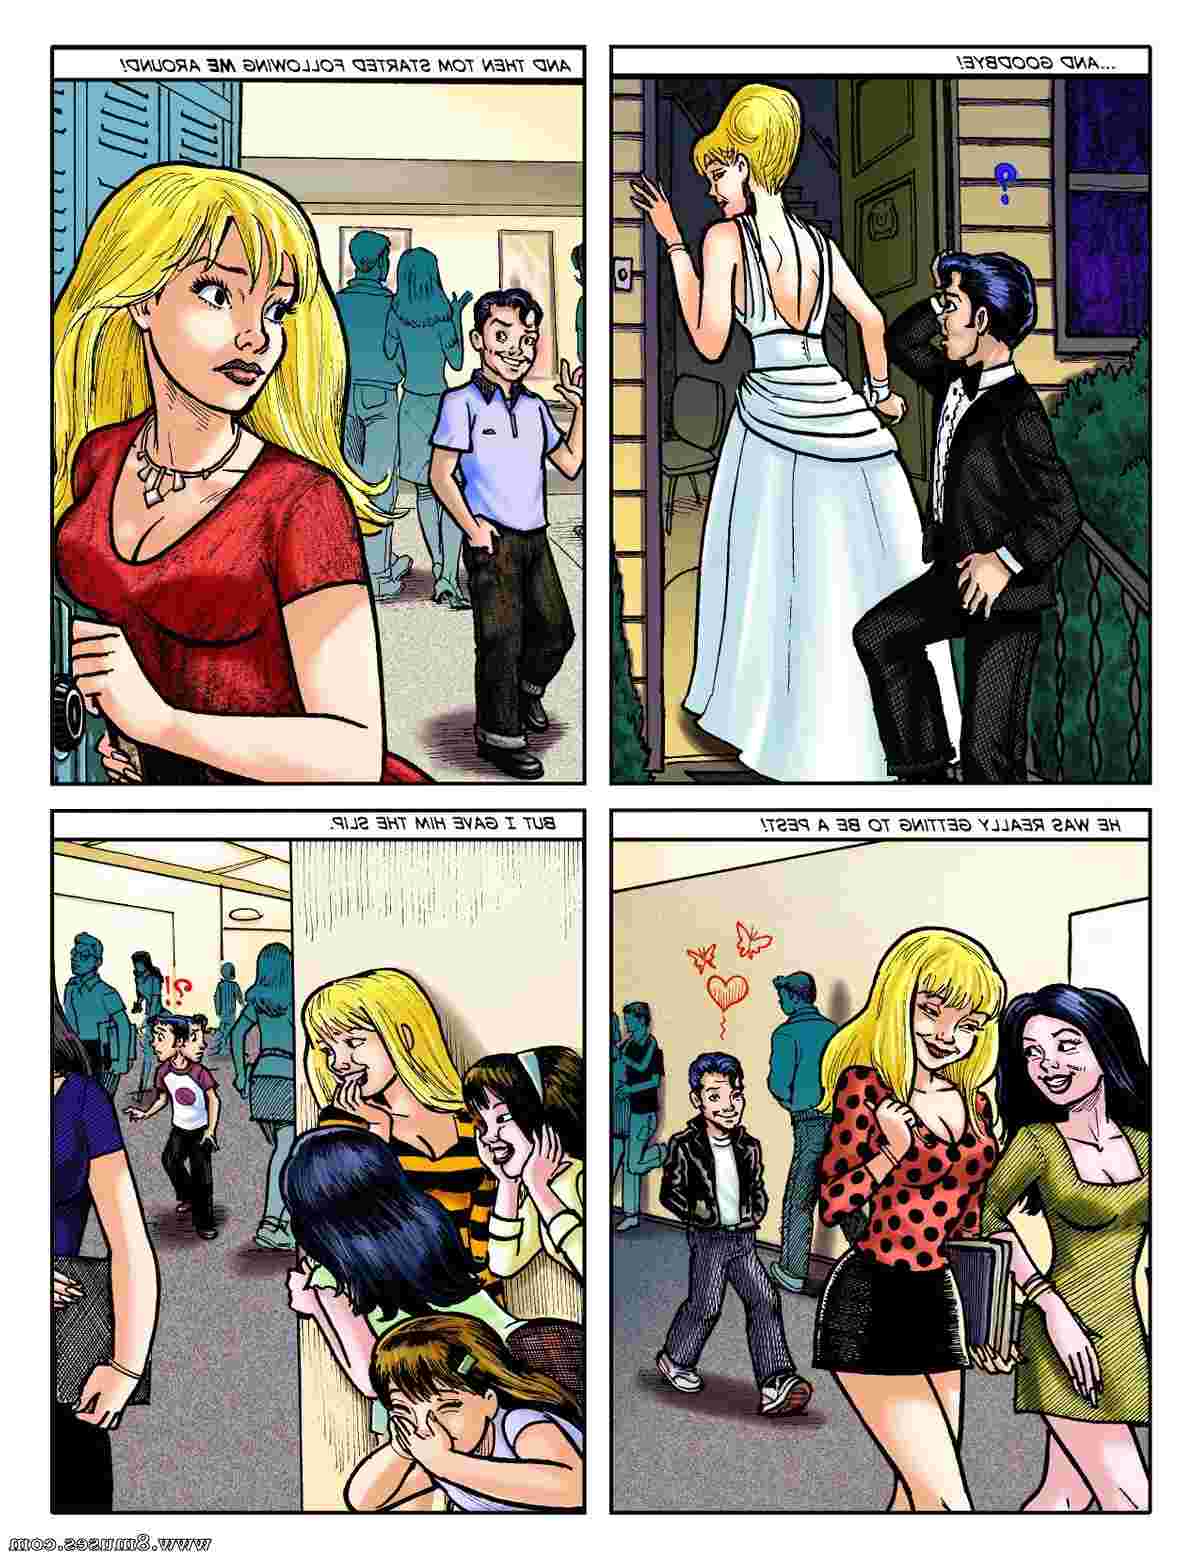 DreamTales-Comics/The-Big-Crush The_Big_Crush__8muses_-_Sex_and_Porn_Comics_11.jpg